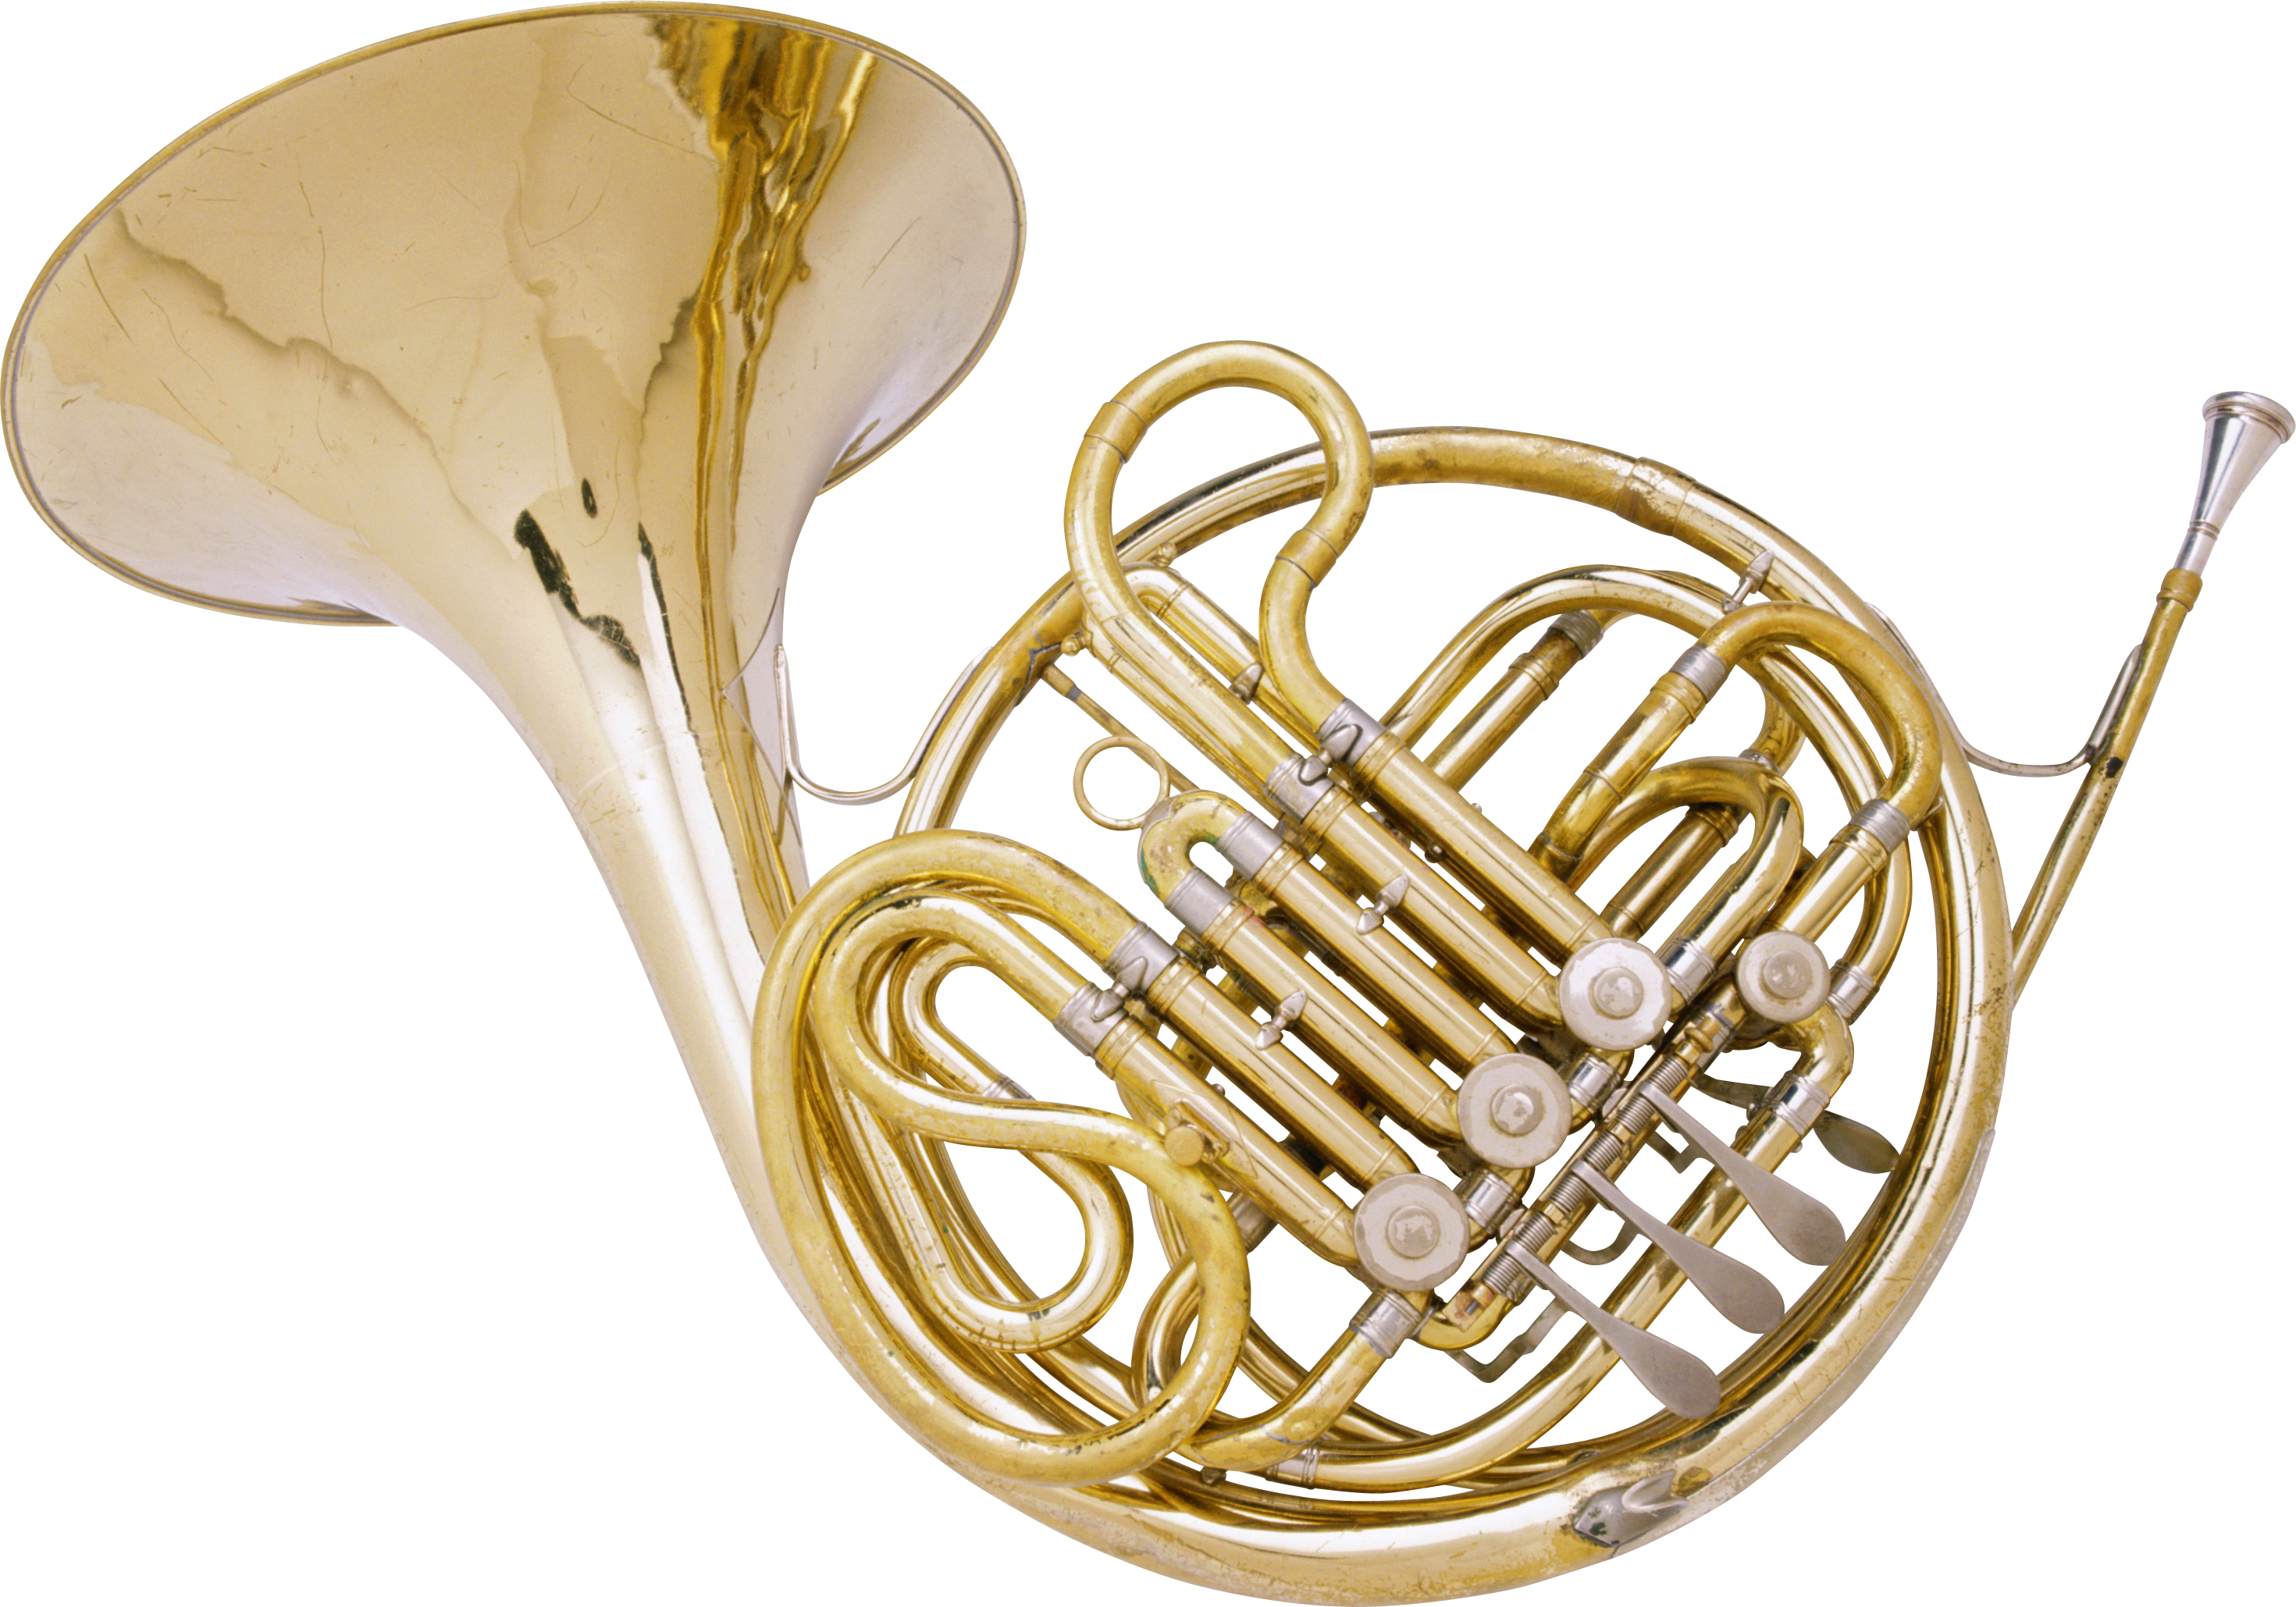 Tromba, strumento musicale